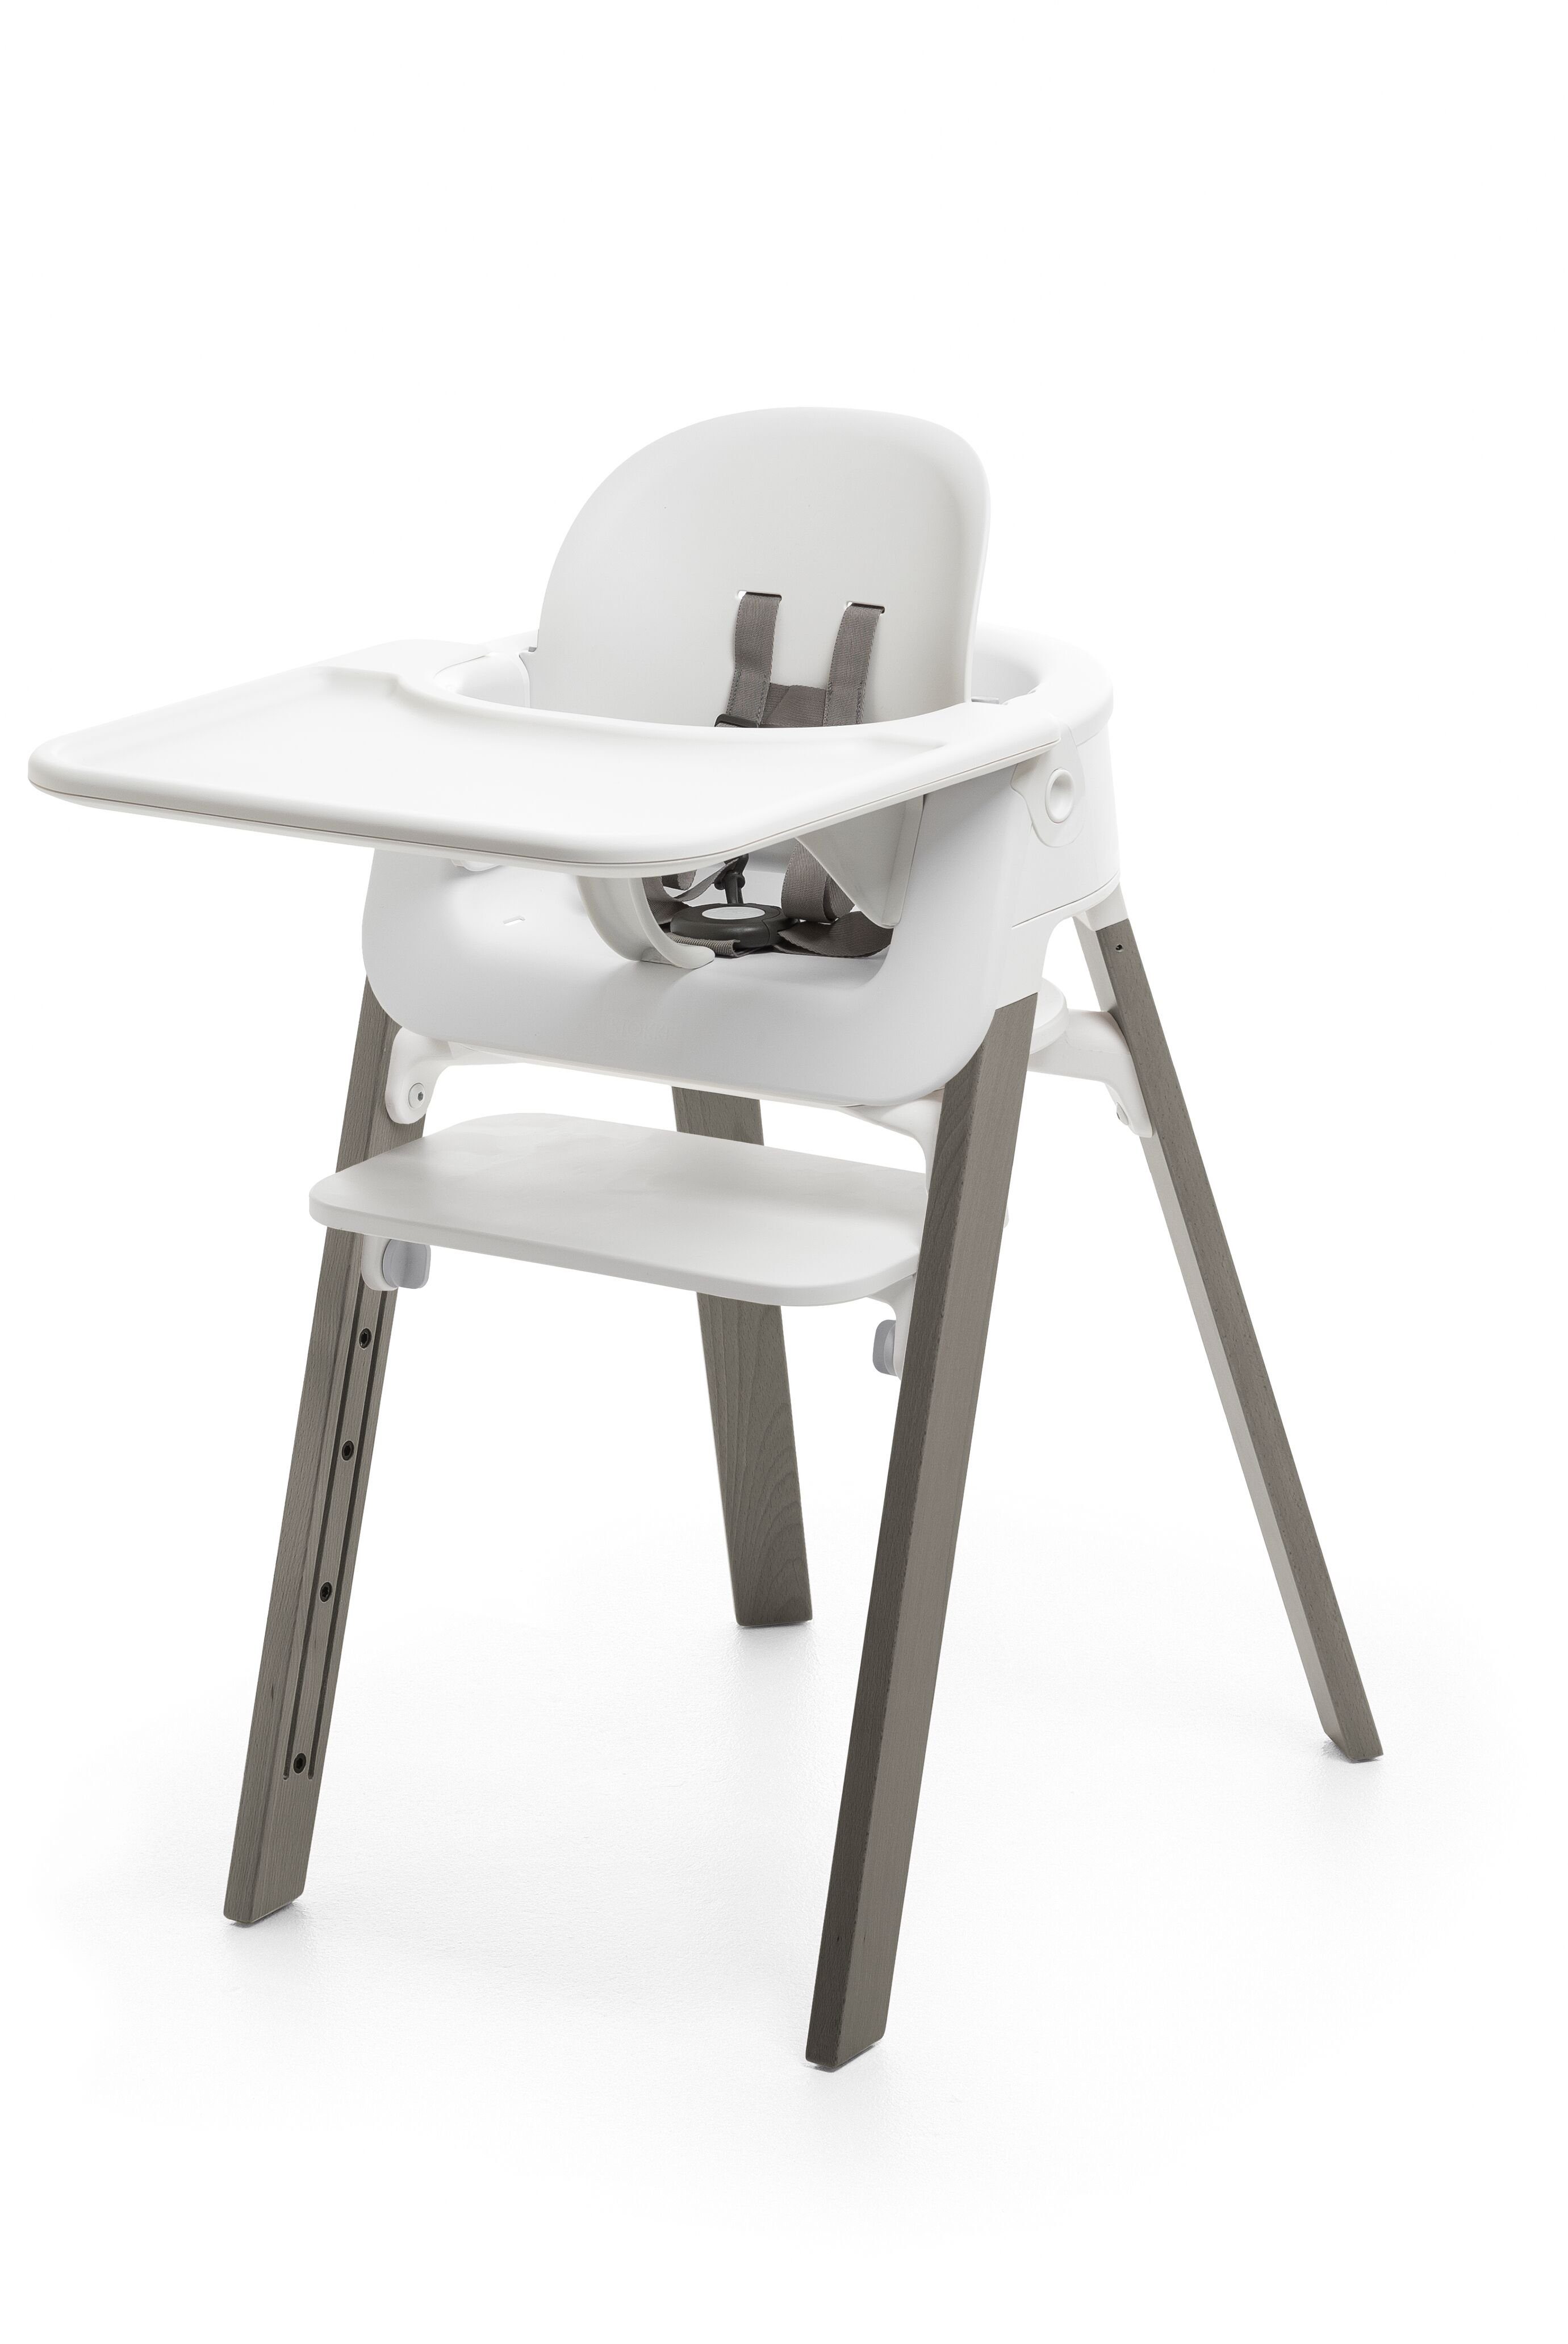 Stokke Kinderstuhl STEPS™ Bundle - Grey White/Hazy mit Tray Hochstuhl Babyset plus